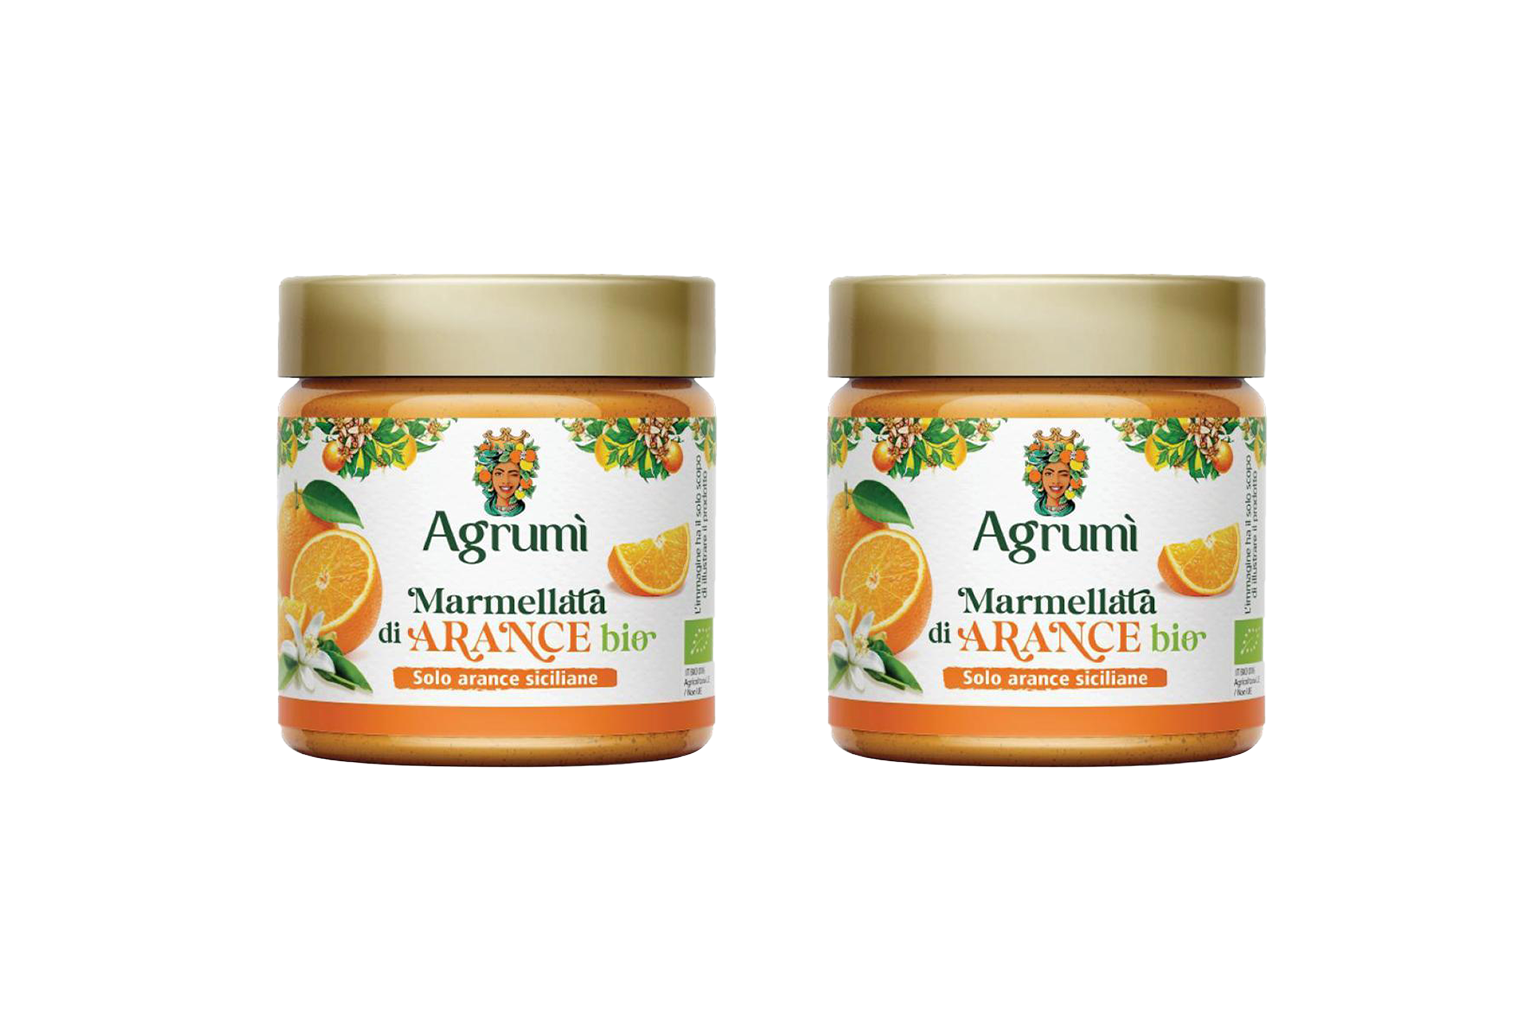 Marmellata di arance BIO Agrumi ricetta tradizionale vasetto 310gr x 2pz